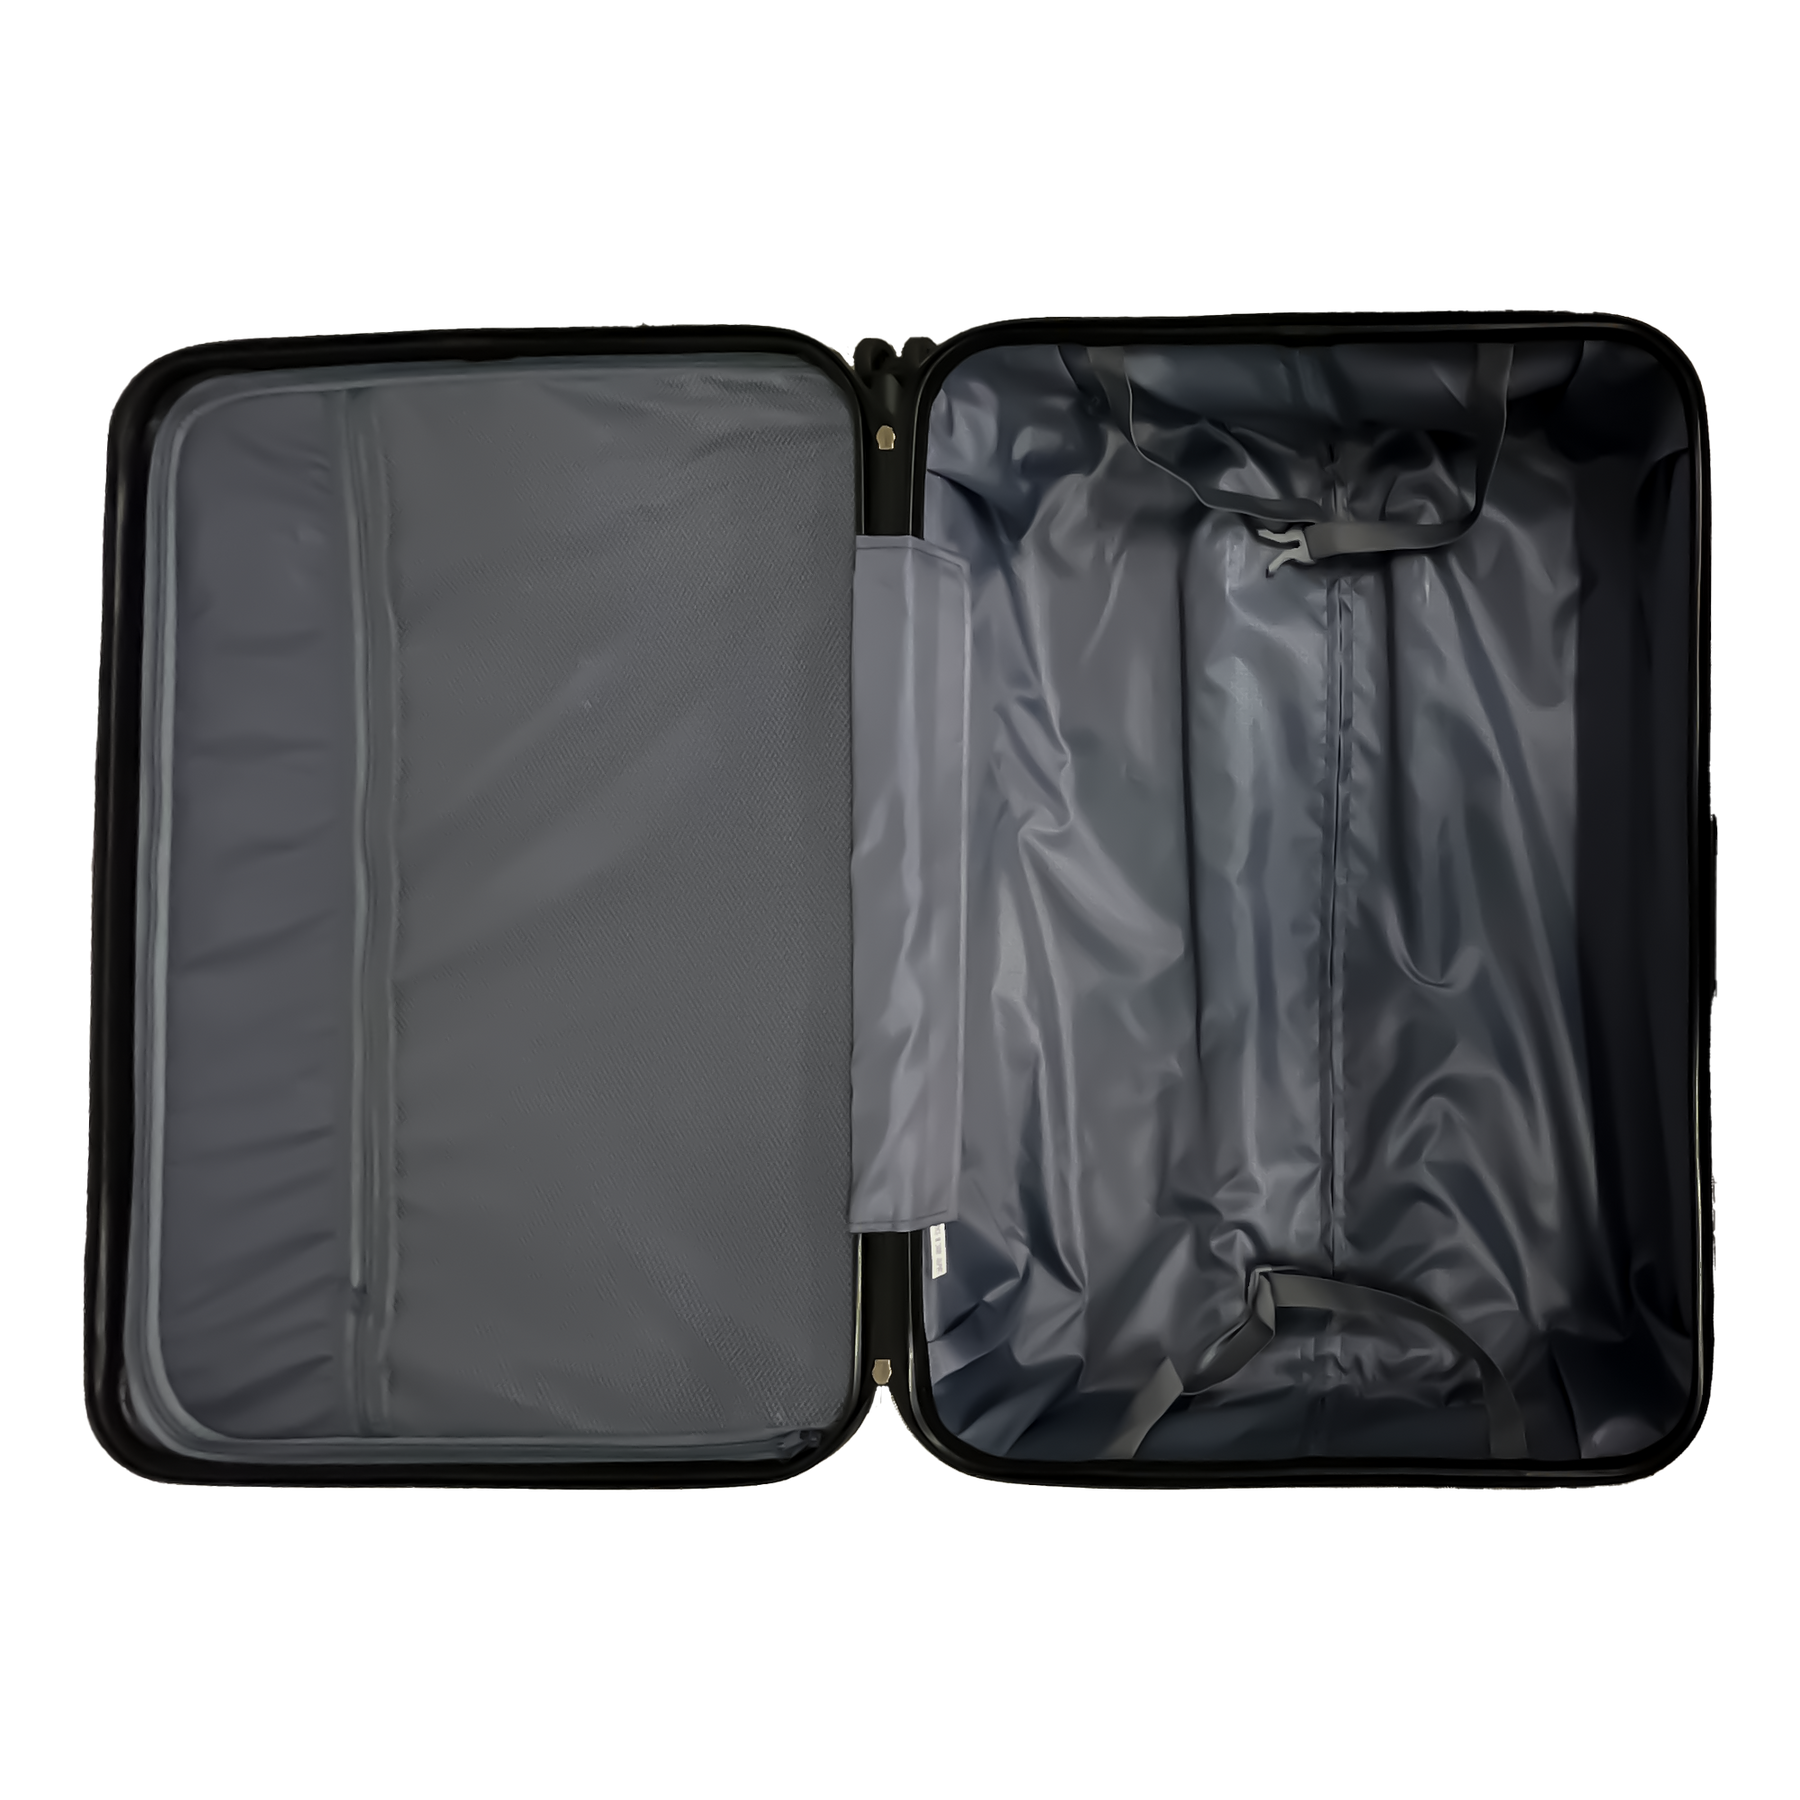 Βαλίτσα Ormi DuoLine Διπλής Γραμμής, Μεγάλου Μεγέθους 75x50x30 εκ., Υπερελαφριά από ABS, 4 Περιστρεφόμενοι Τροχοί 360°